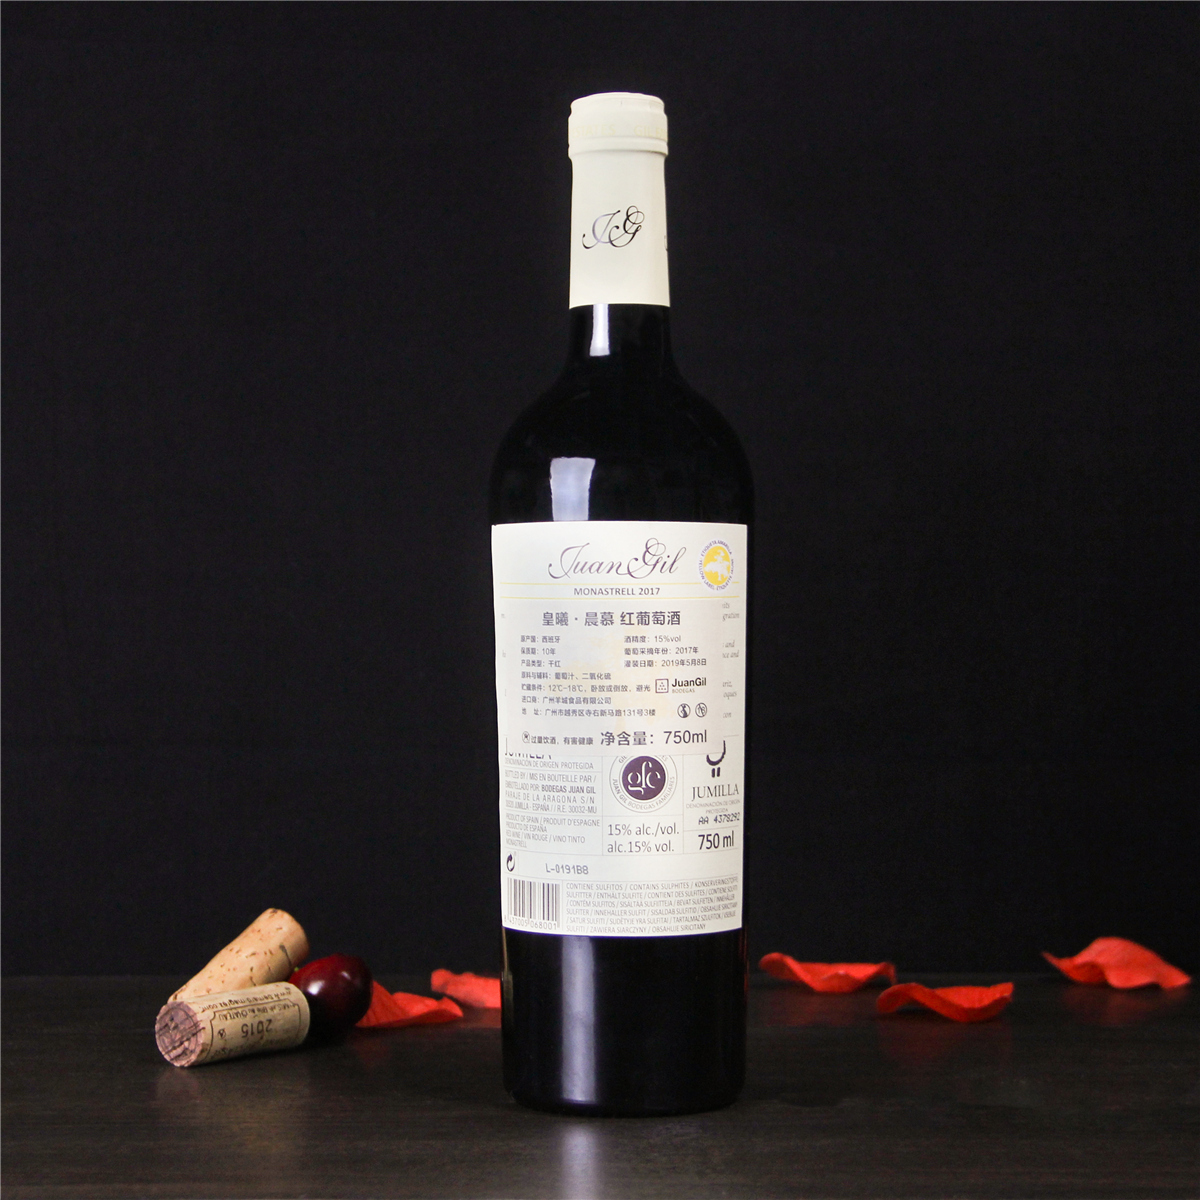 西班牙胡米利亚皇曦·晨慕红葡萄酒红酒